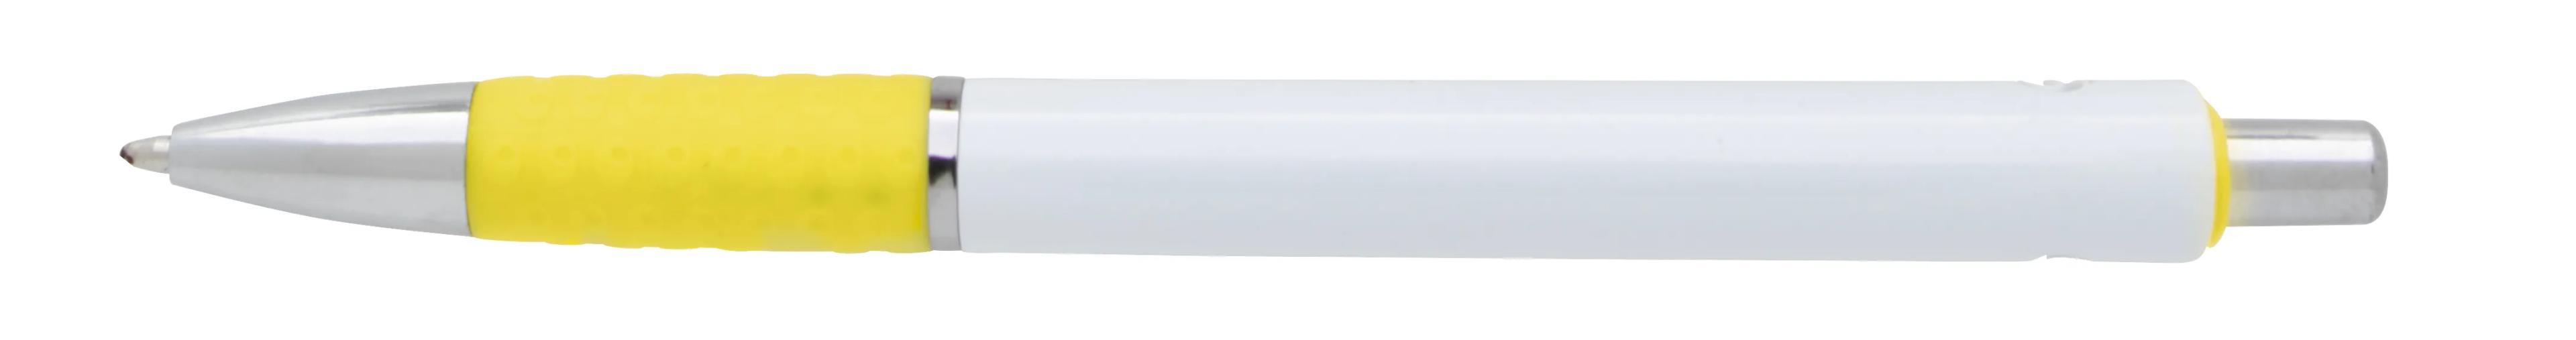 Souvenir® Image Grip Pen 30 of 50